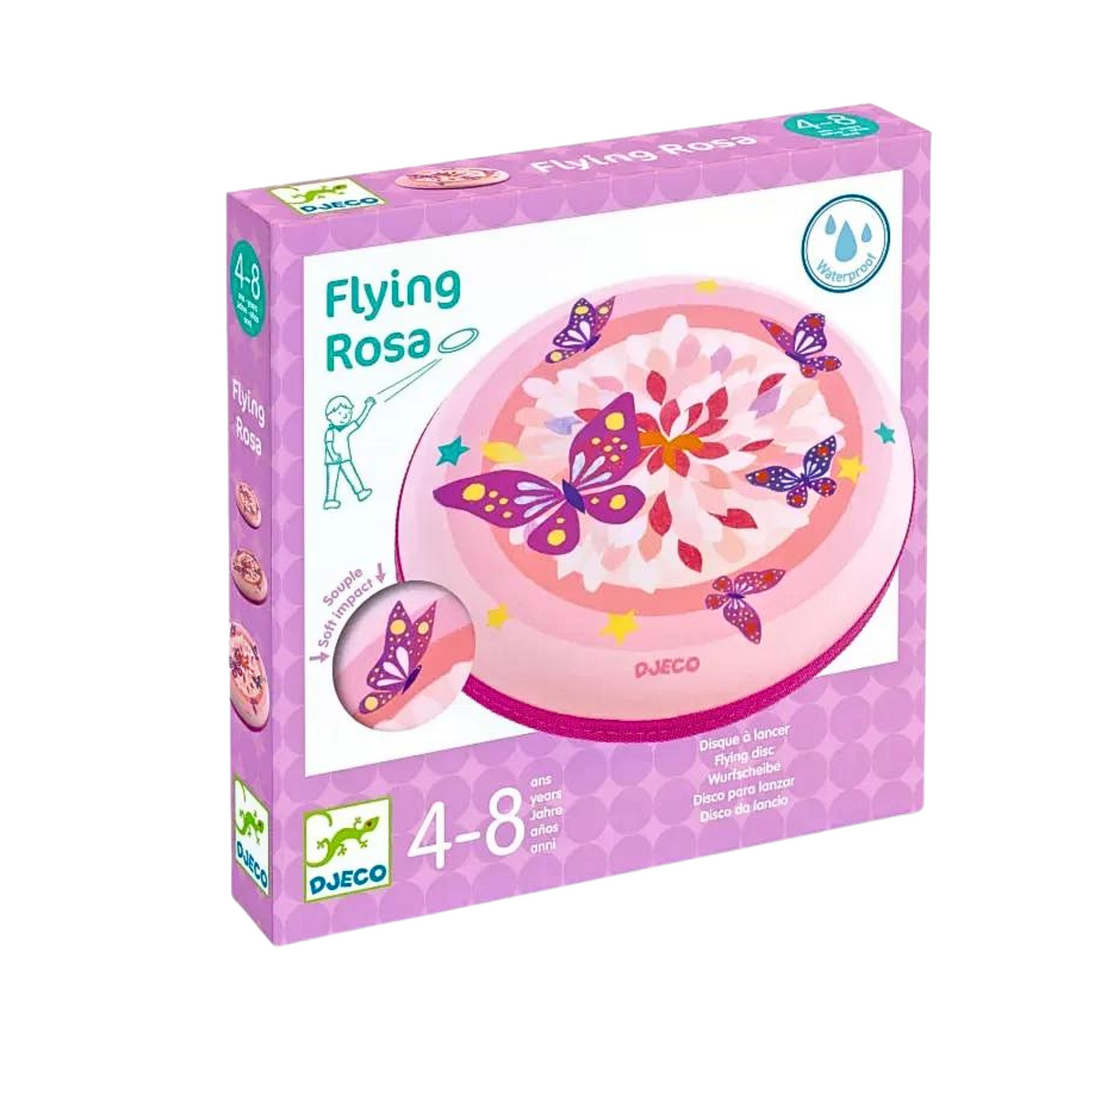 Flying disc - Flying Rosa